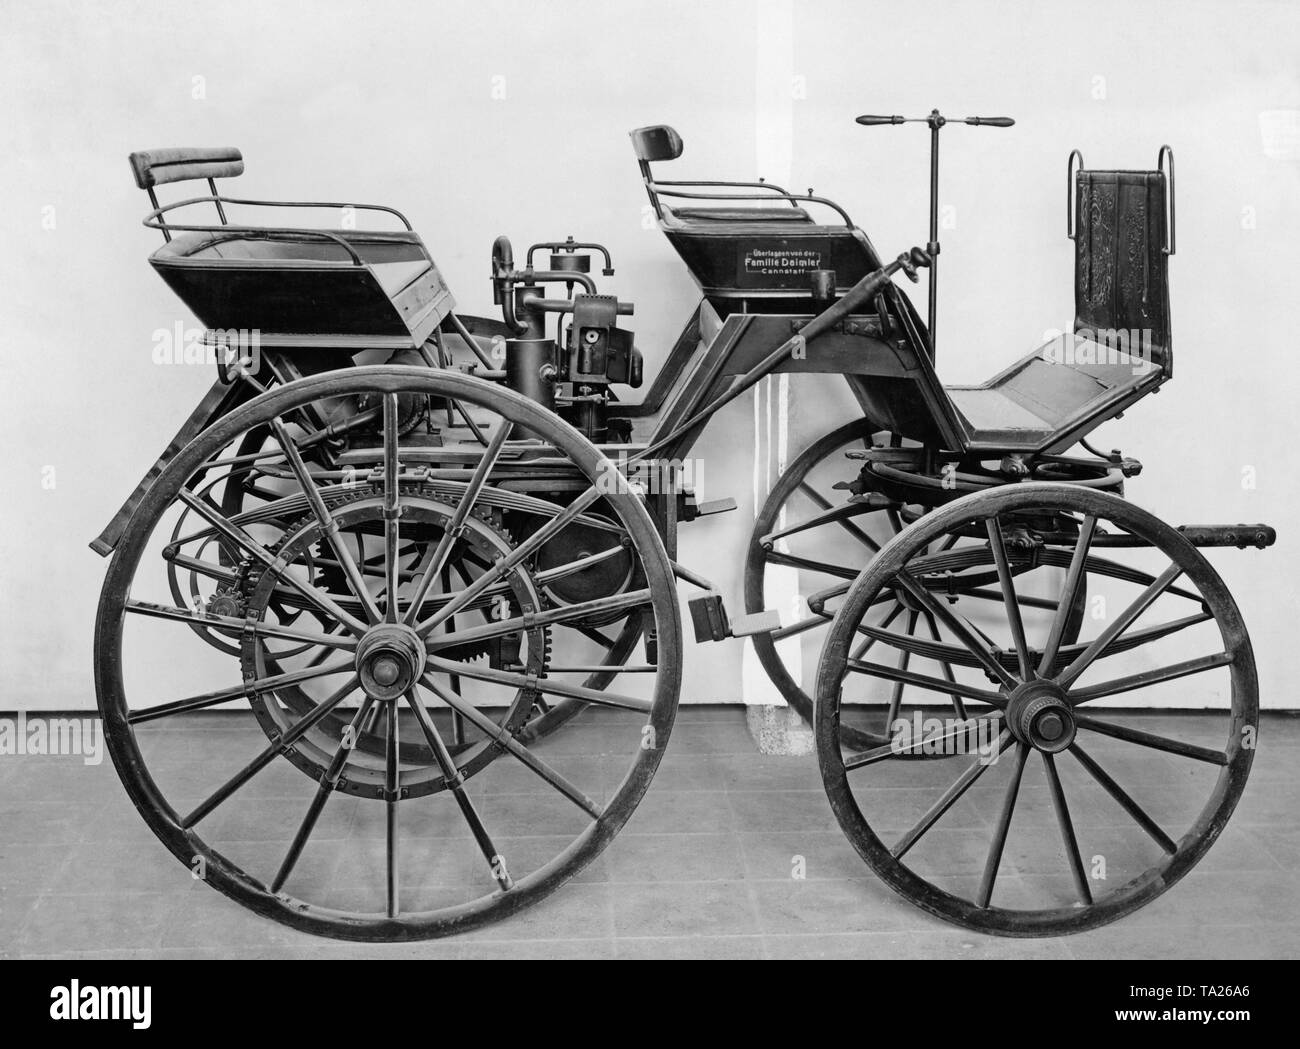 Le otorkutsche «' (motor carriage) a été la première automobile de Gottlieb Daimler. C'était un chariot classique sans timon qui Daimler a ensuite équipé d'un moteur à combustion interne. Banque D'Images